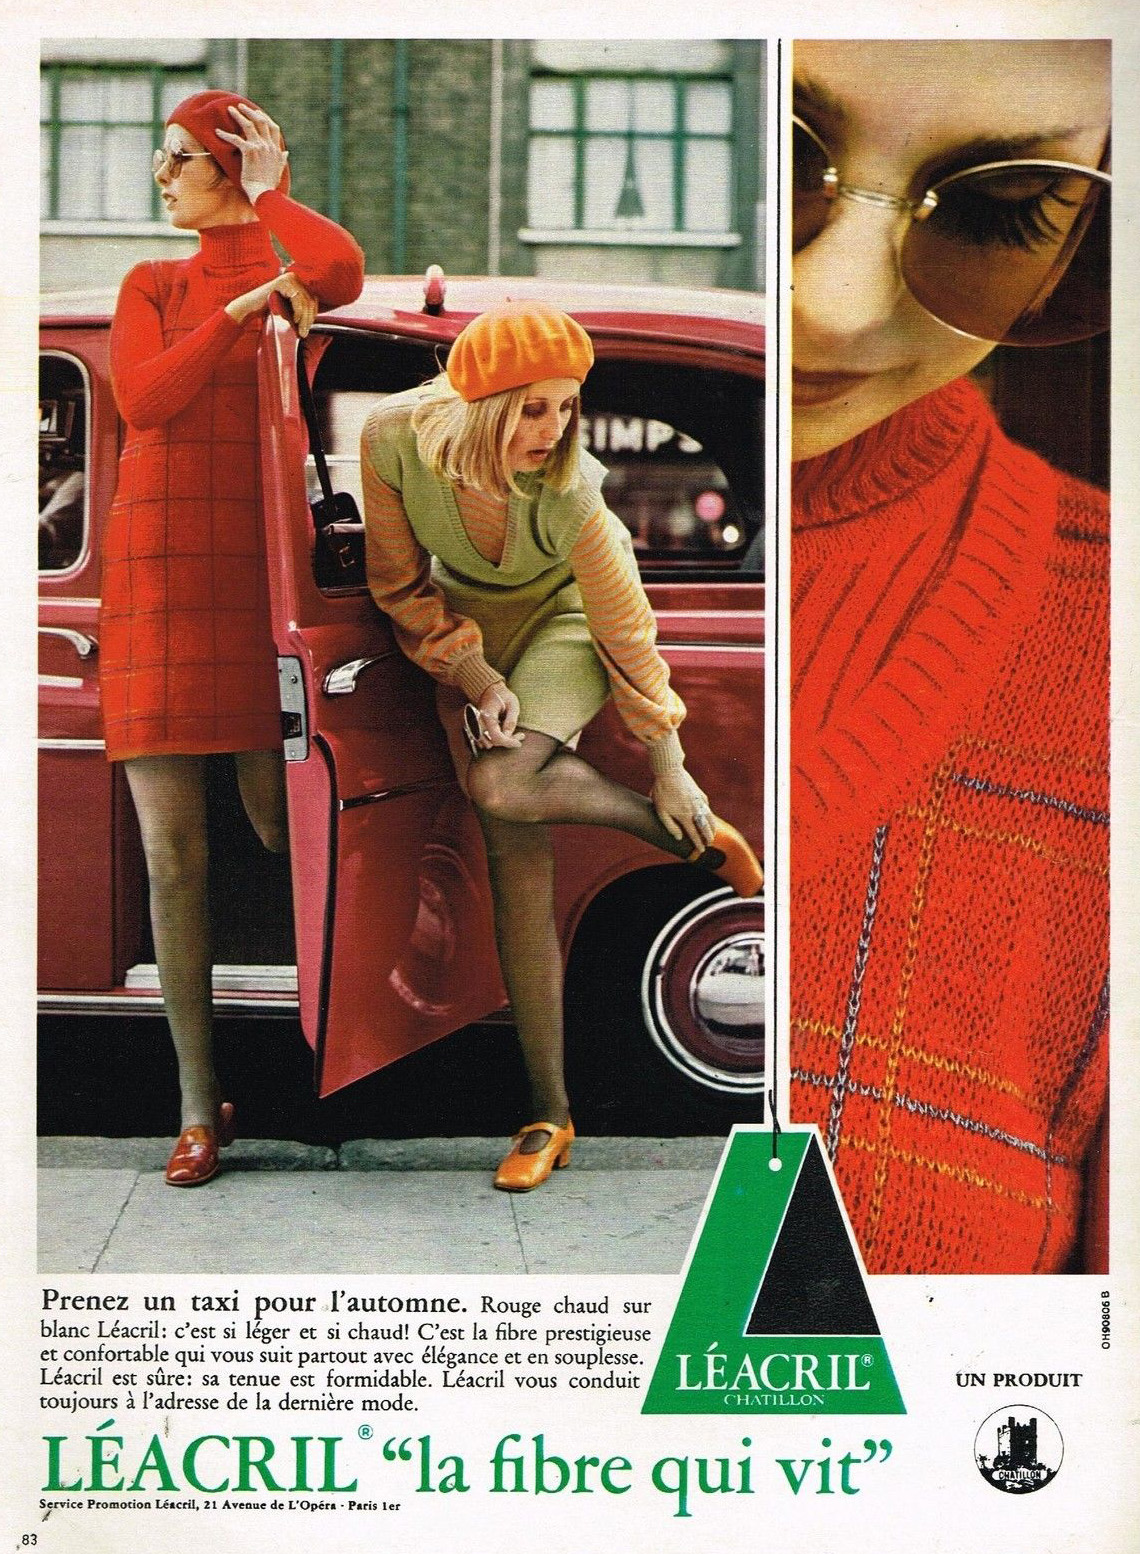 1969 Pret à porter le tissu velours Léacril